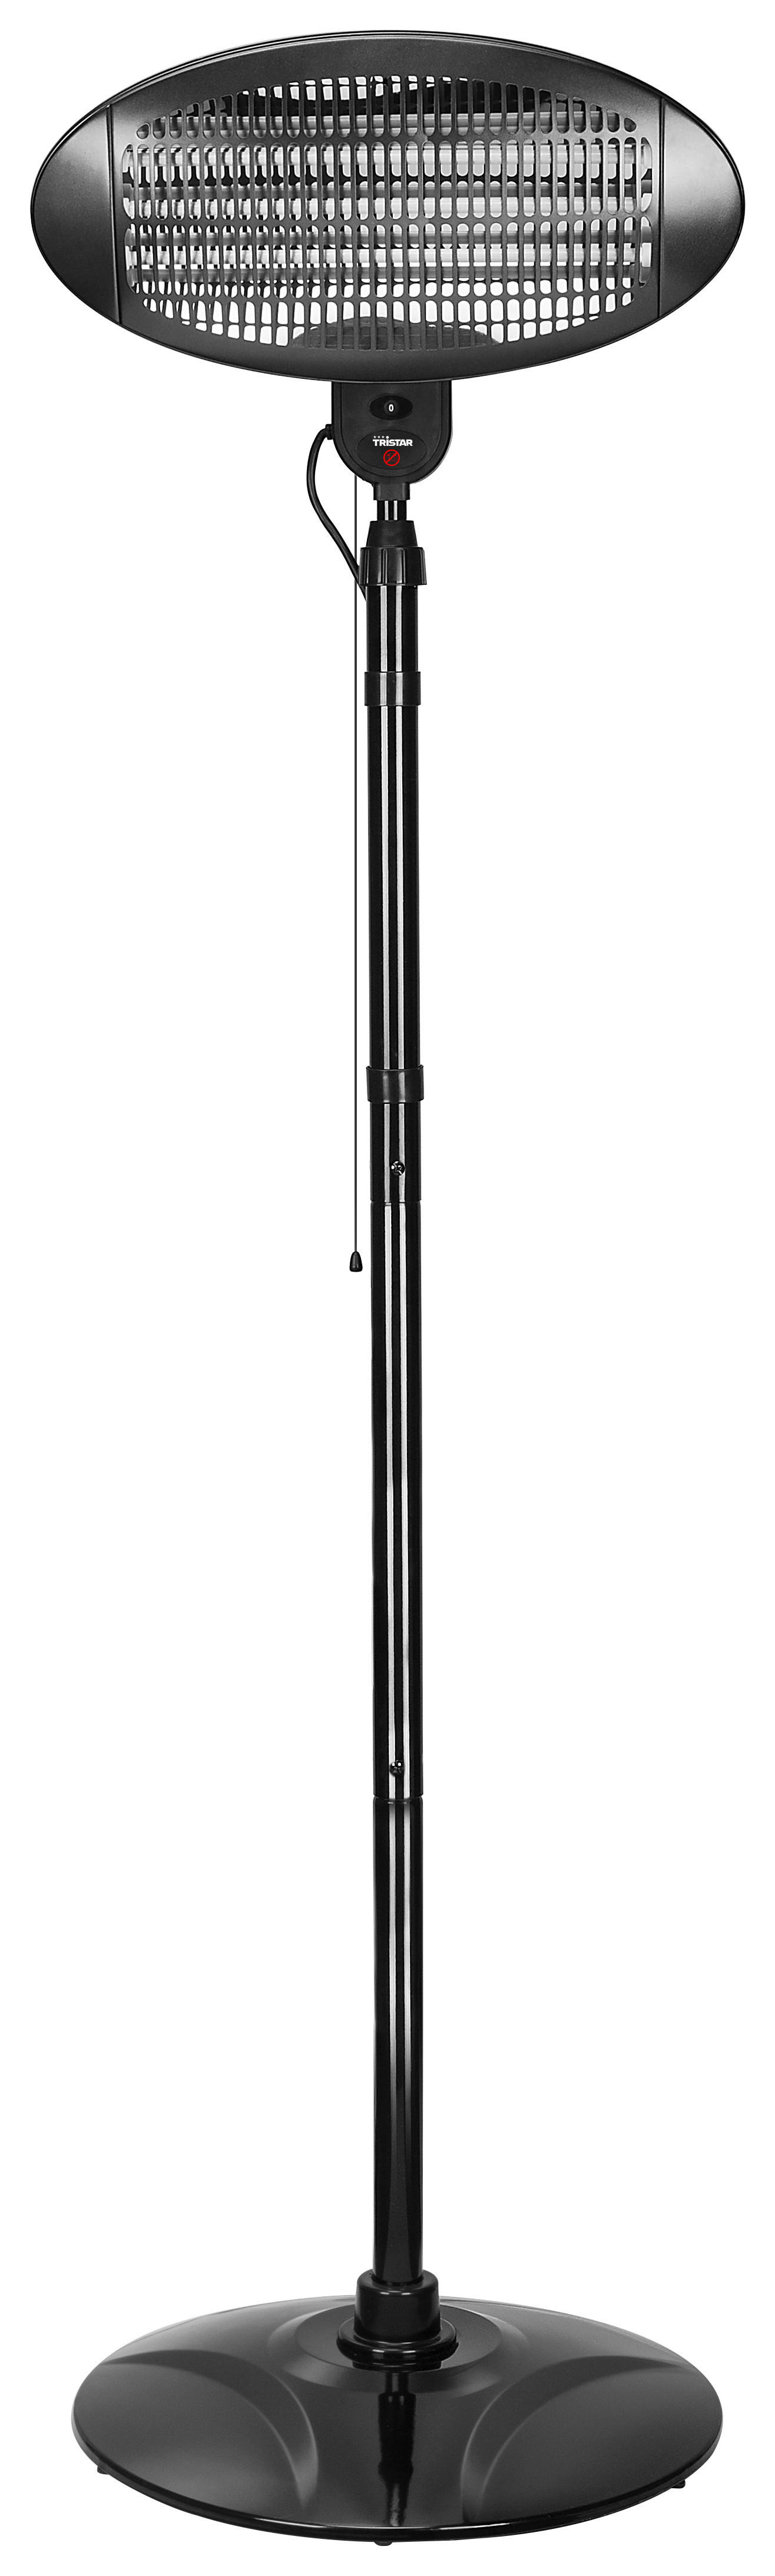 INFRAROTHEIZSTRAHLER KA-5287 - Schwarz, KONVENTIONELL, Kunststoff (50/50/200cm) - Atrigo